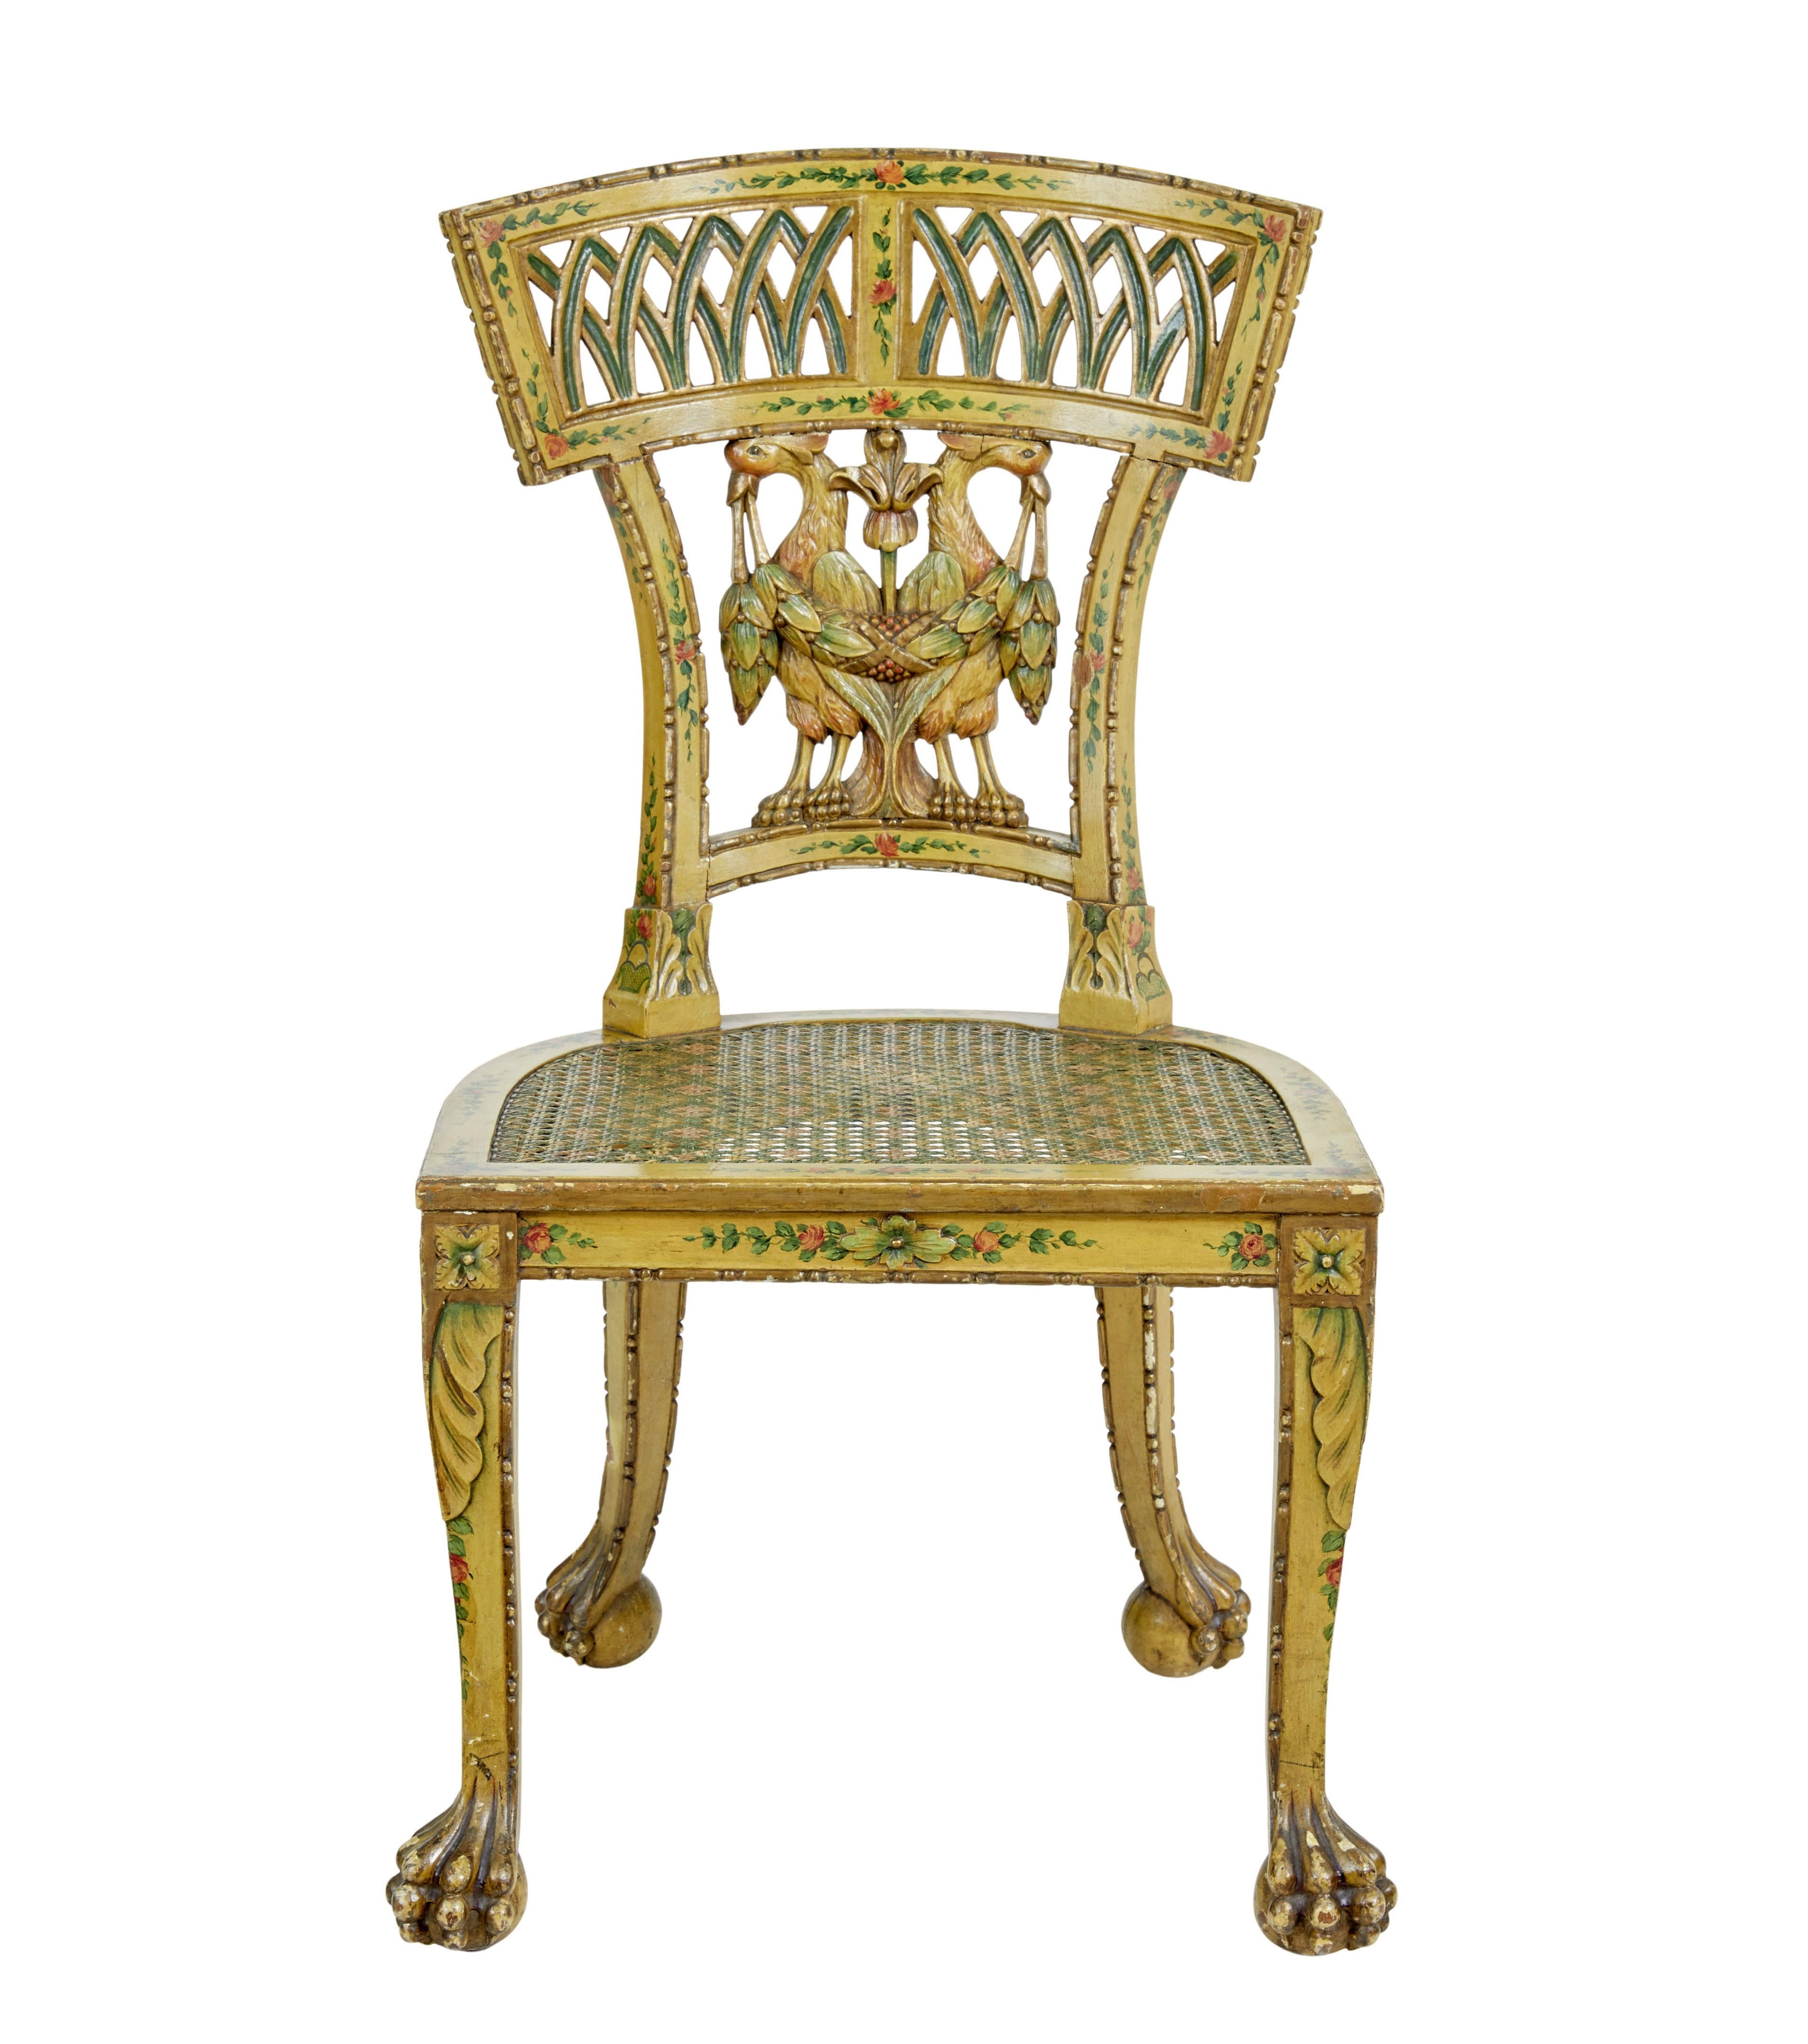 Geschnitzter und bemalter Biedermeier-Stuhl des 19. Jahrhunderts, um 1800.

Ein schönes Beispiel für ein frühes österreichisches Biedermeiermöbel. Geformte Rückenlehne mit durchbrochener Verzierung, Hauptmerkmal ist das germanische Wappen in der